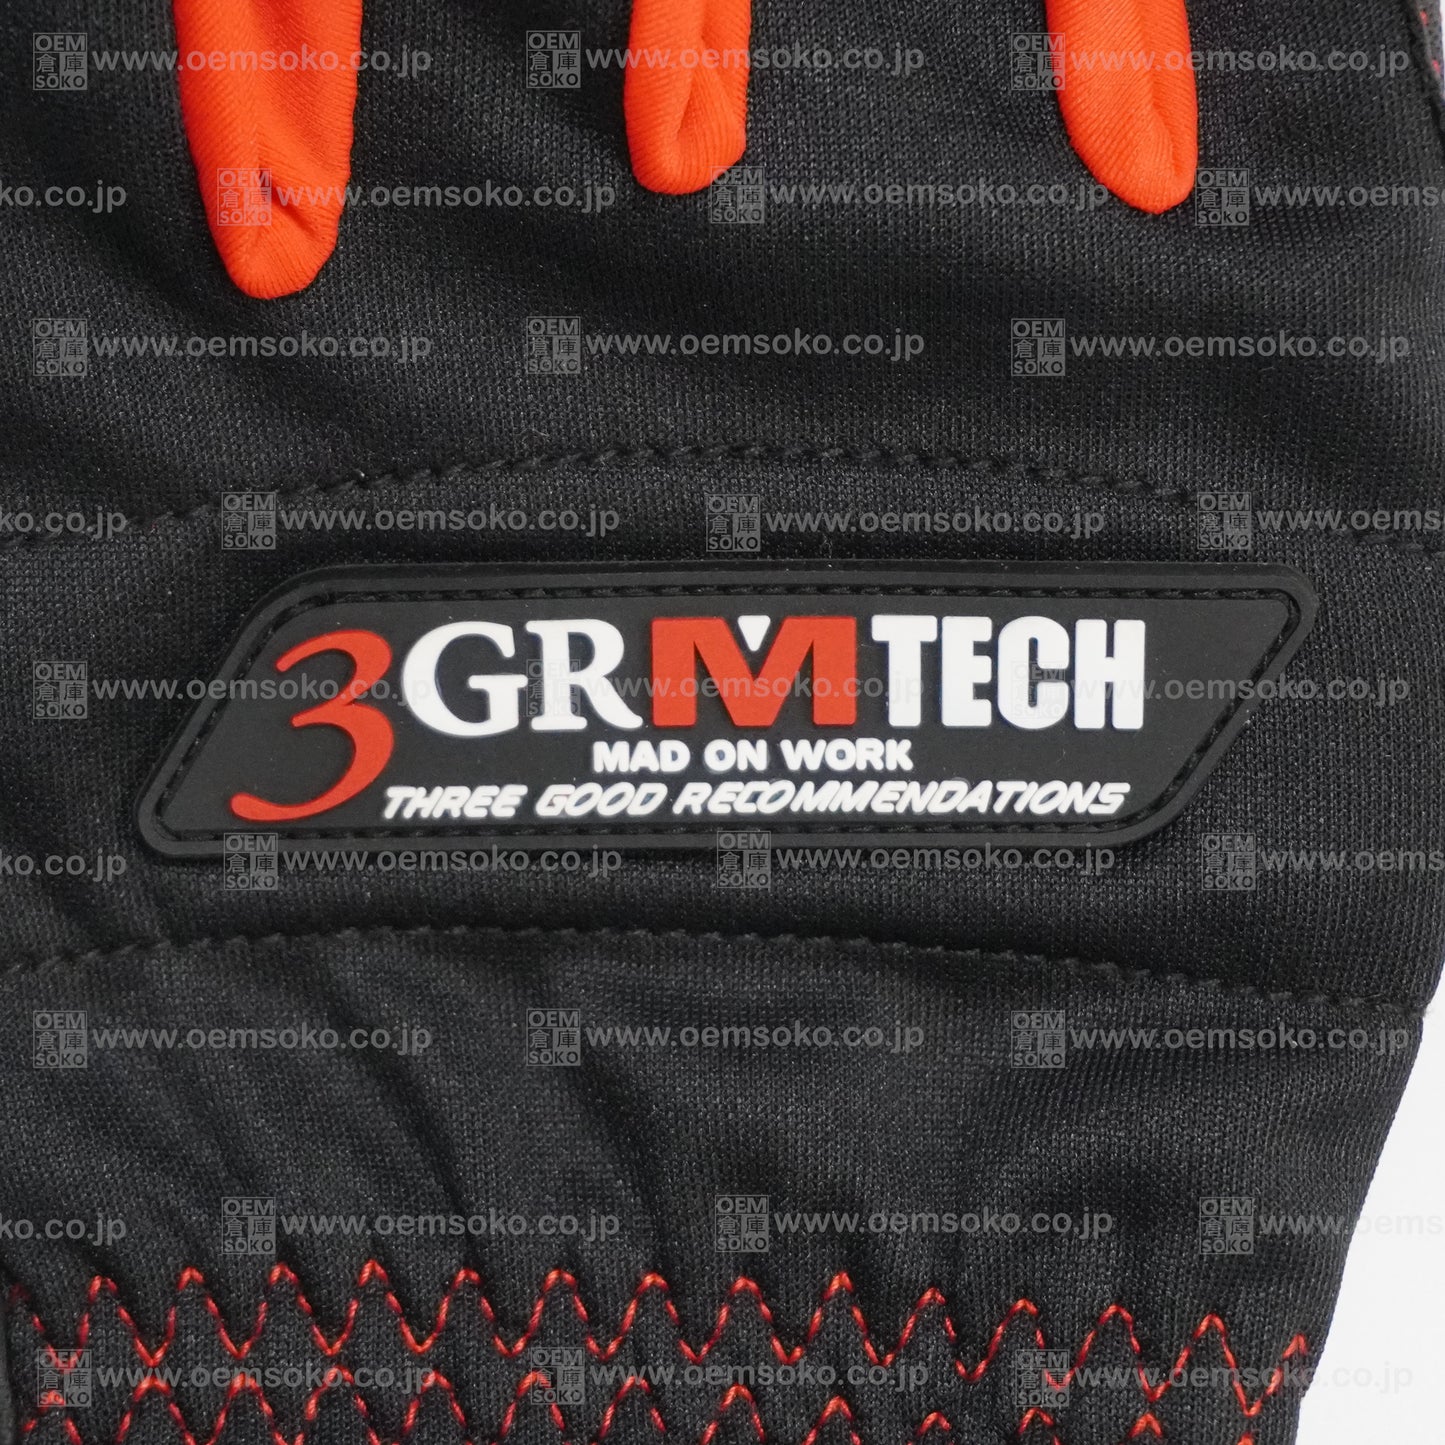 Mad On Work 3GR Mechanics Gloves (Size 3L)